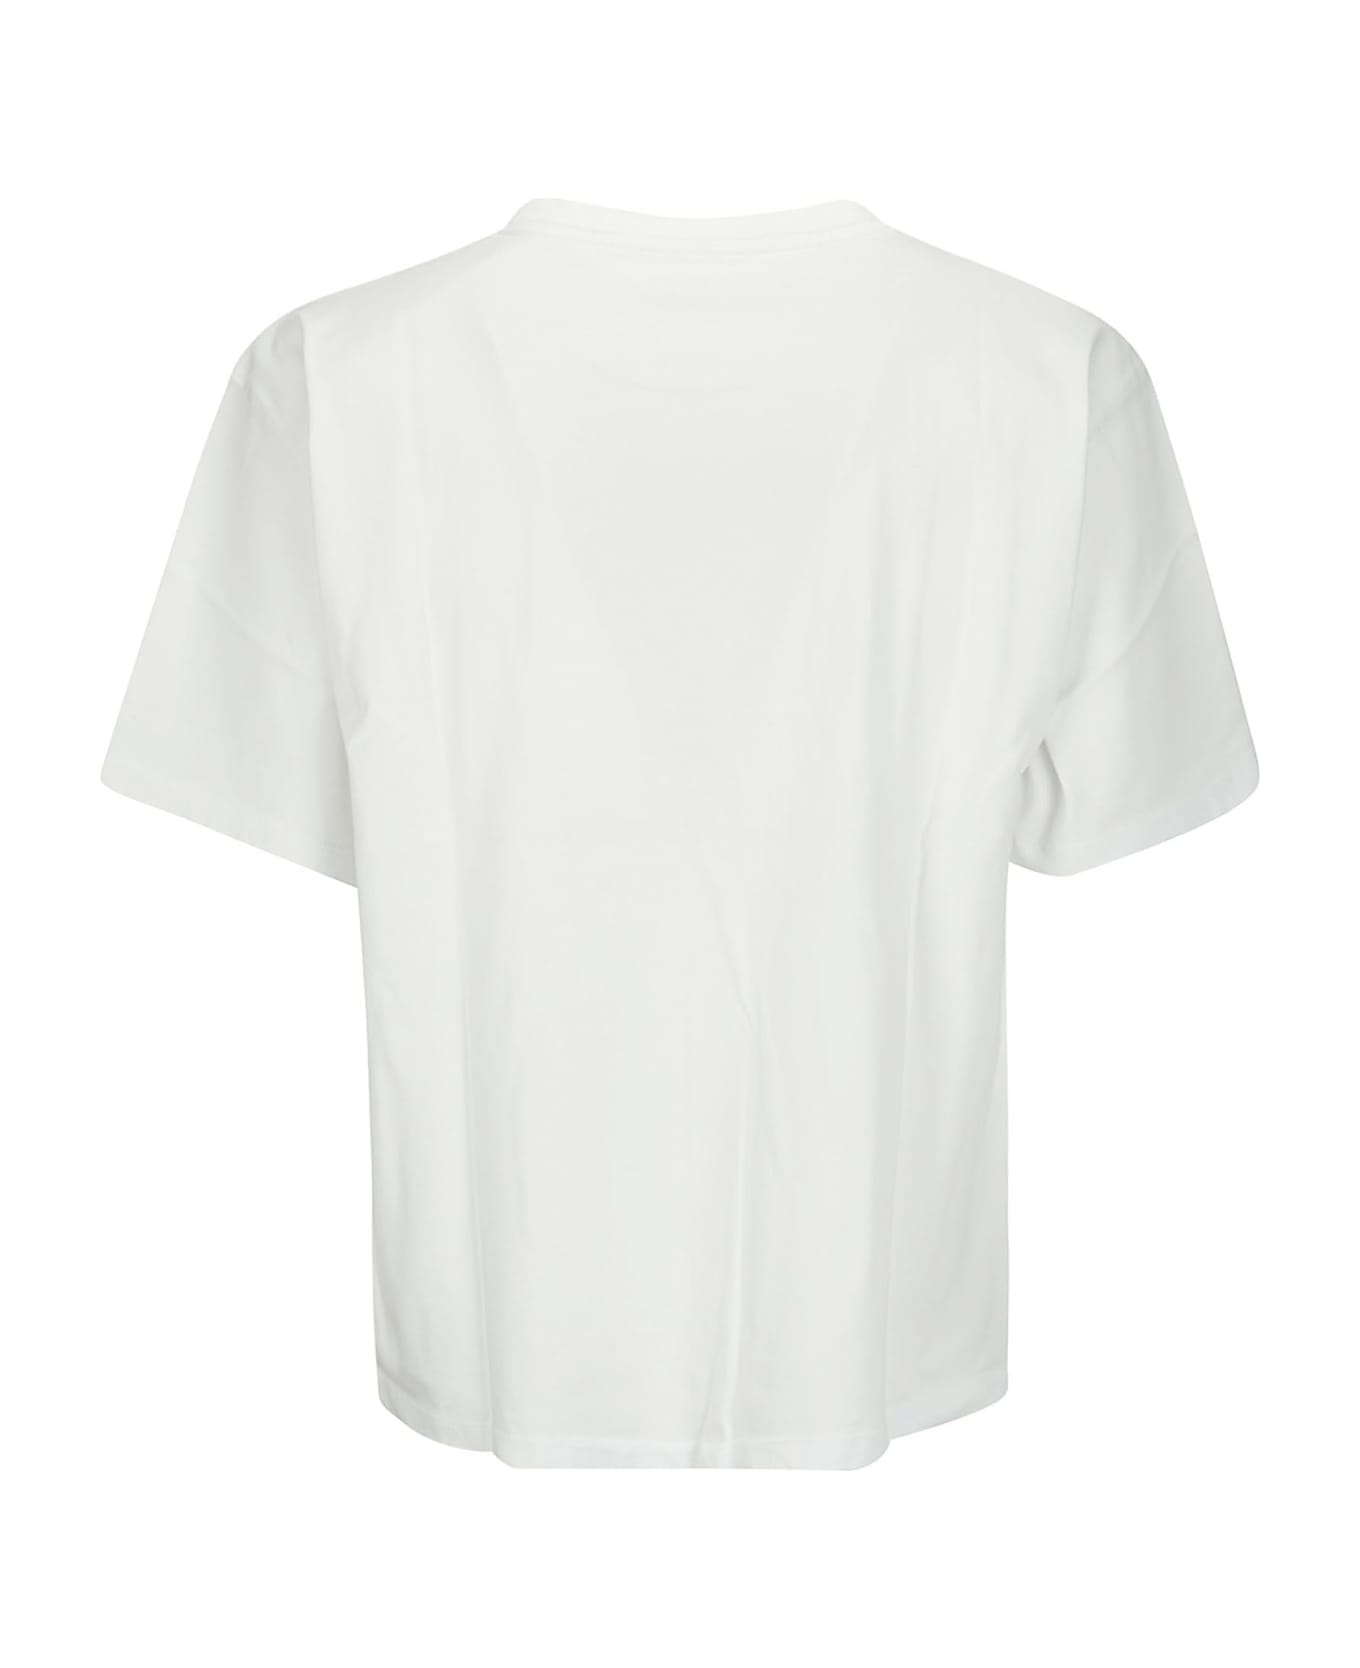 PACCBET Men Miami Tee Shirt Knit - WHITE